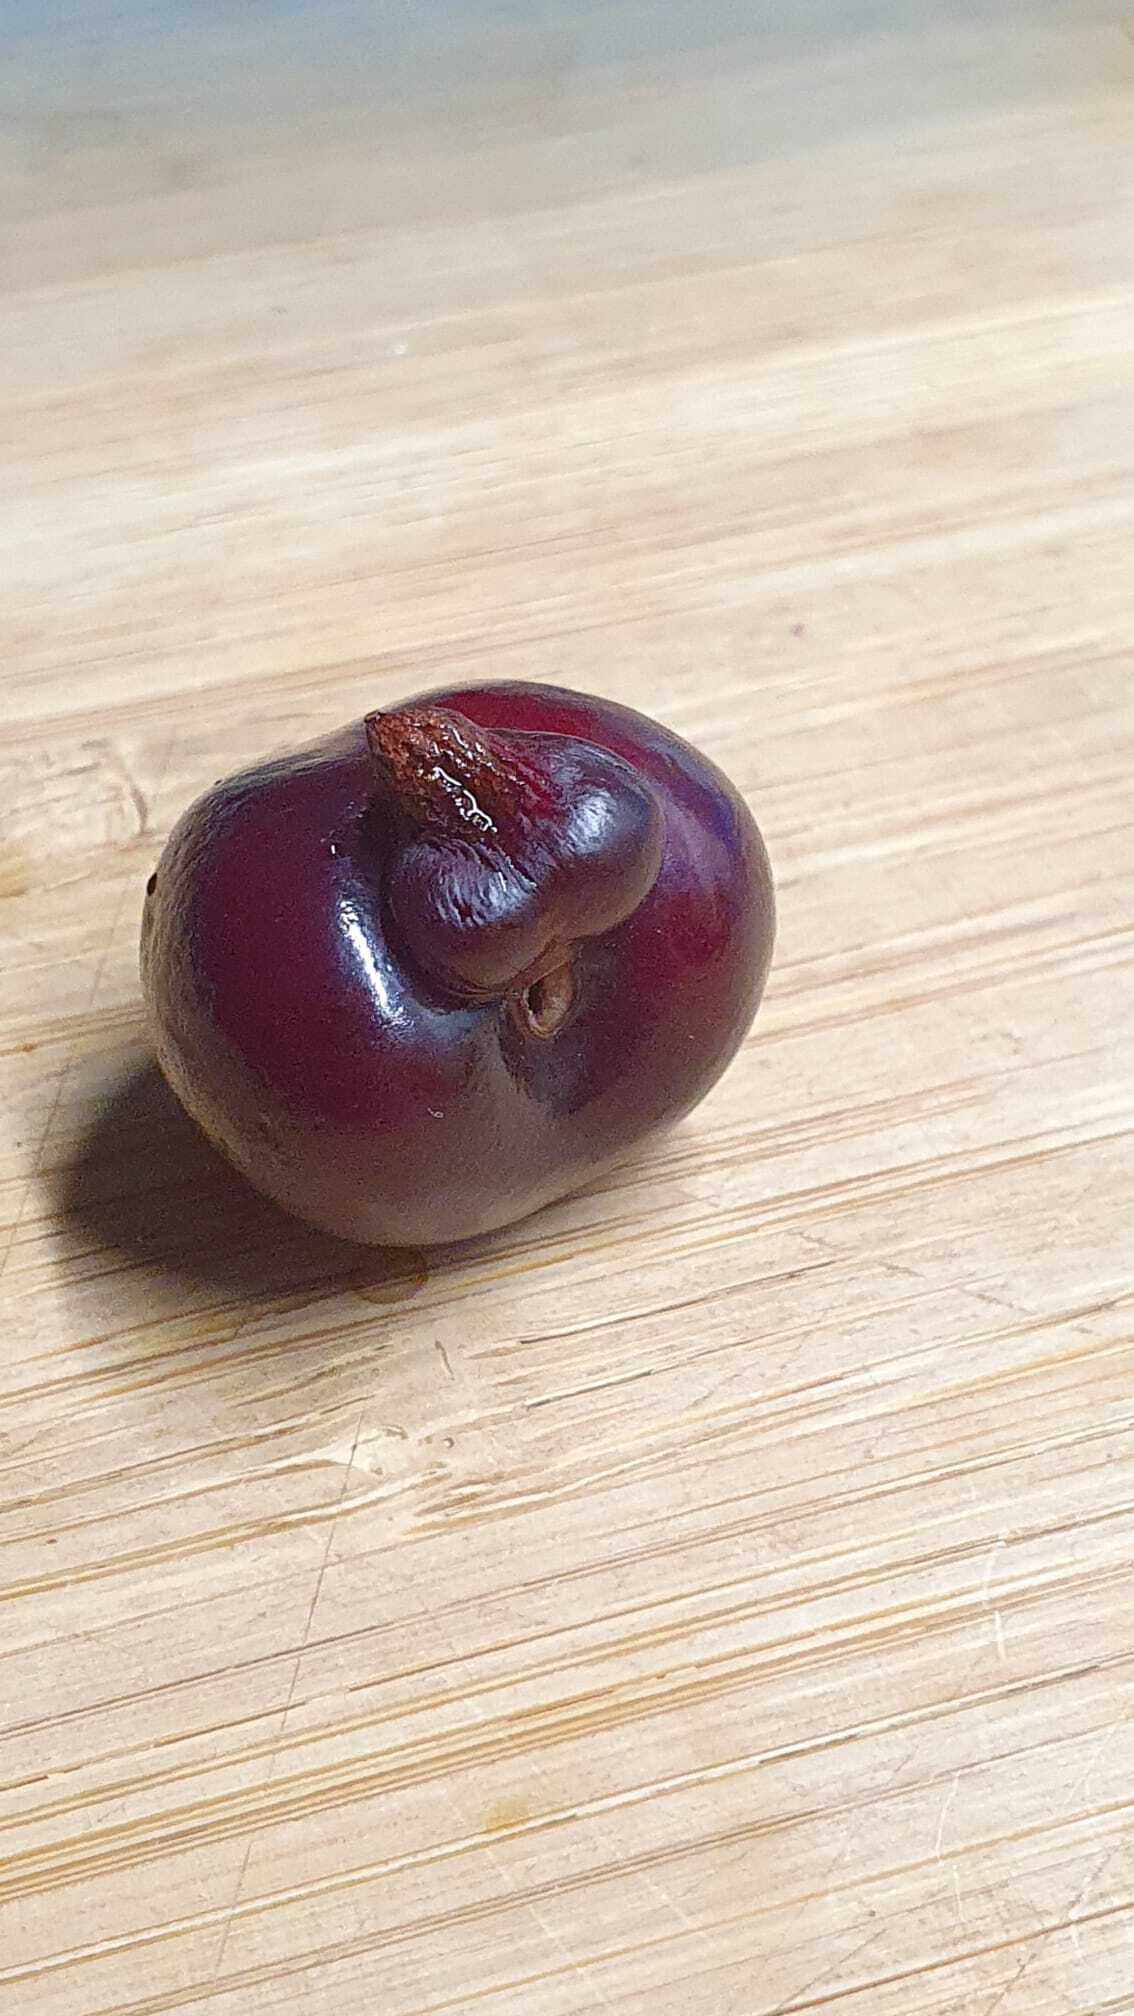 Cherry from Europe - My, Cherry, Penis, Eggs, Pareidolia, Cherries, It seemed, Longpost